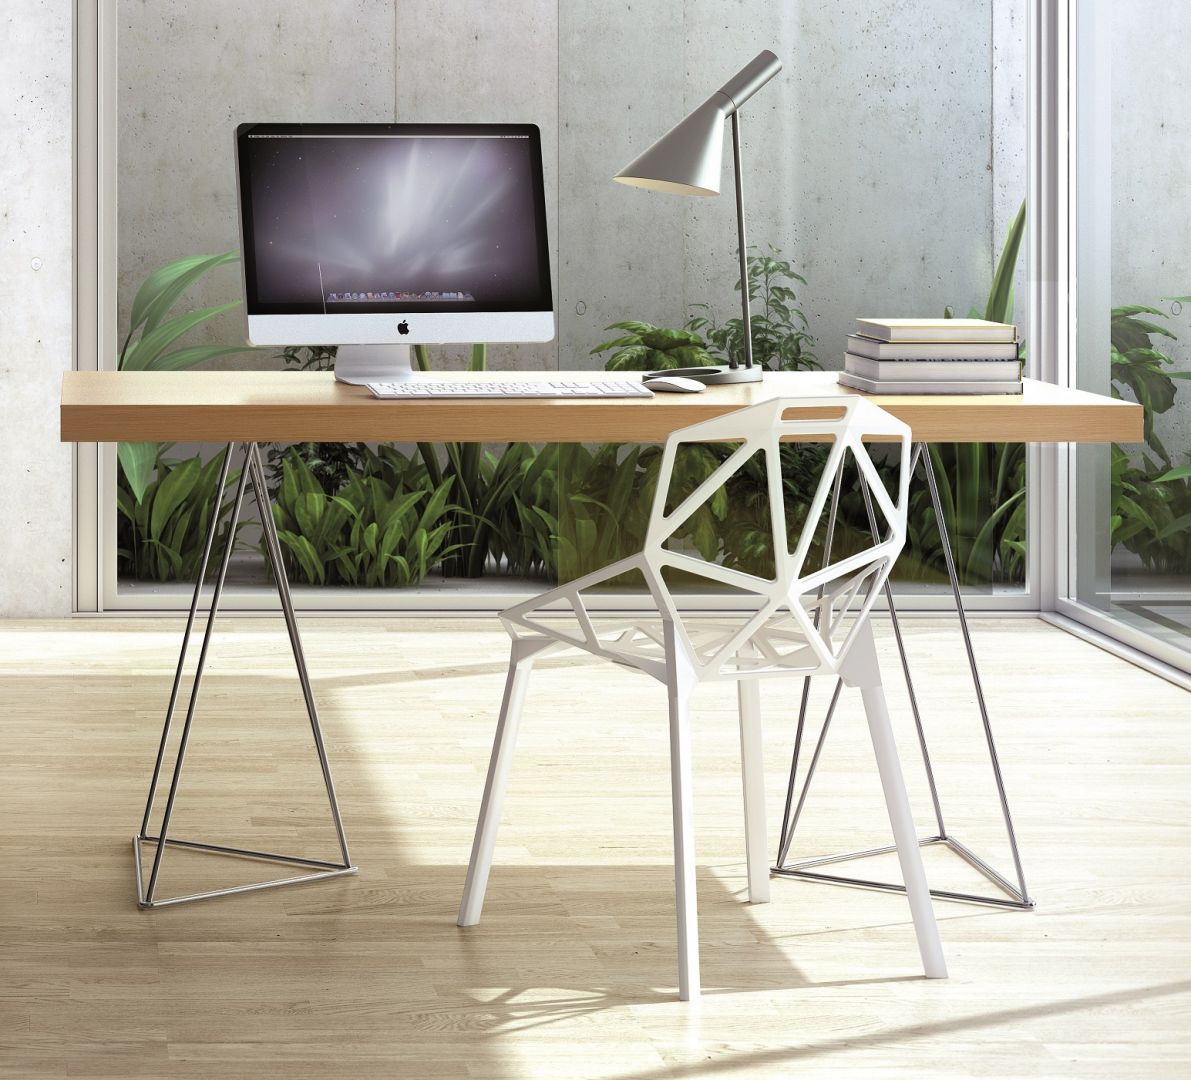 Stół Multi marki Temahome to nowoczesny mebel o minimalistycznej formie. Fot. Temahome